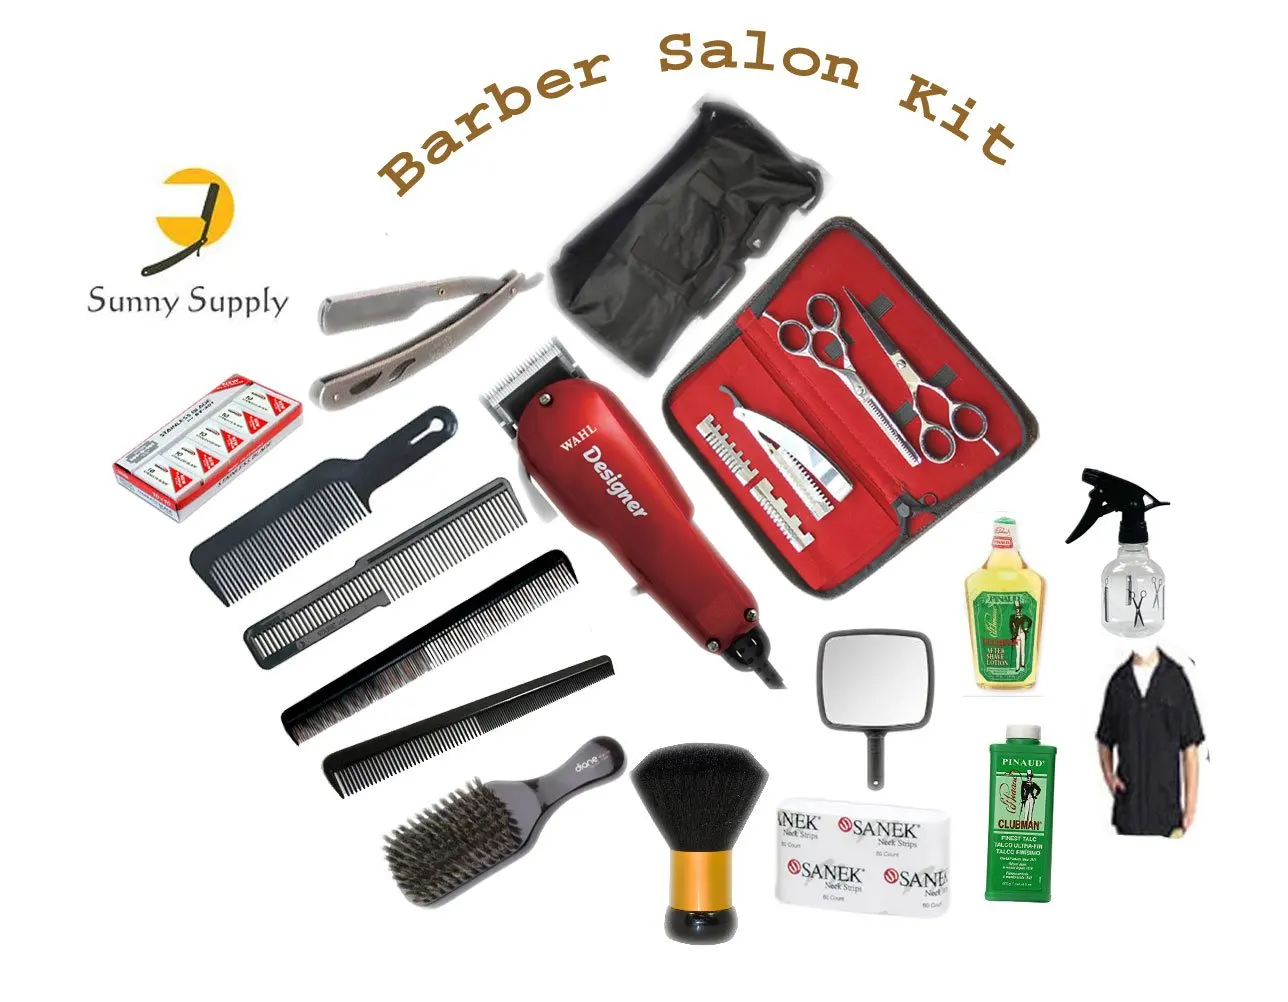 full professional barber kit